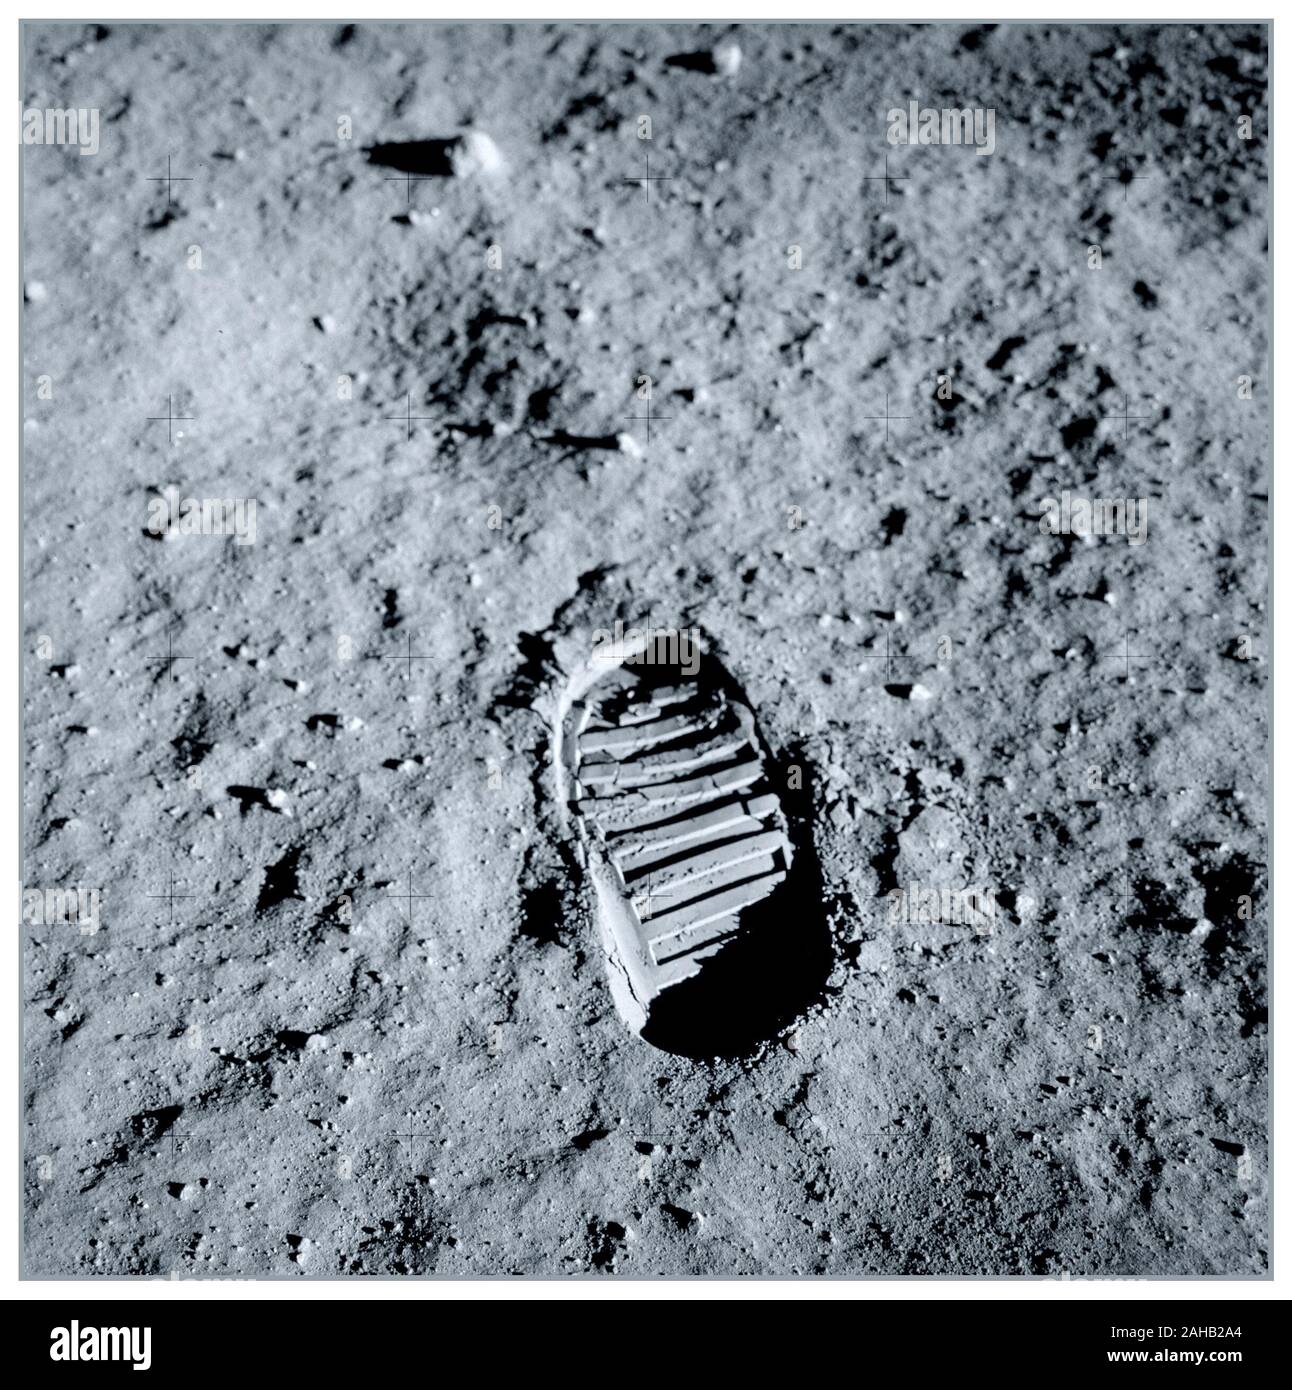 FOOTPRINT DI LUNA 1969 Apollo 11 Modulo Lunare Pilot Buzz Aldrin's bootprint. Aldrin fotografato questo bootprint circa un ora nella loro lunar extra vehicular attività sulla luglio 20, 1969, come parte delle indagini per la meccanica del terreno di superficie lunare. Questa foto più tardi sarebbe diventato sinonimo di umanità's venture nello spazio. Un piccolo passo per l uomo, un passo da gigante per l'umanità. Foto Stock